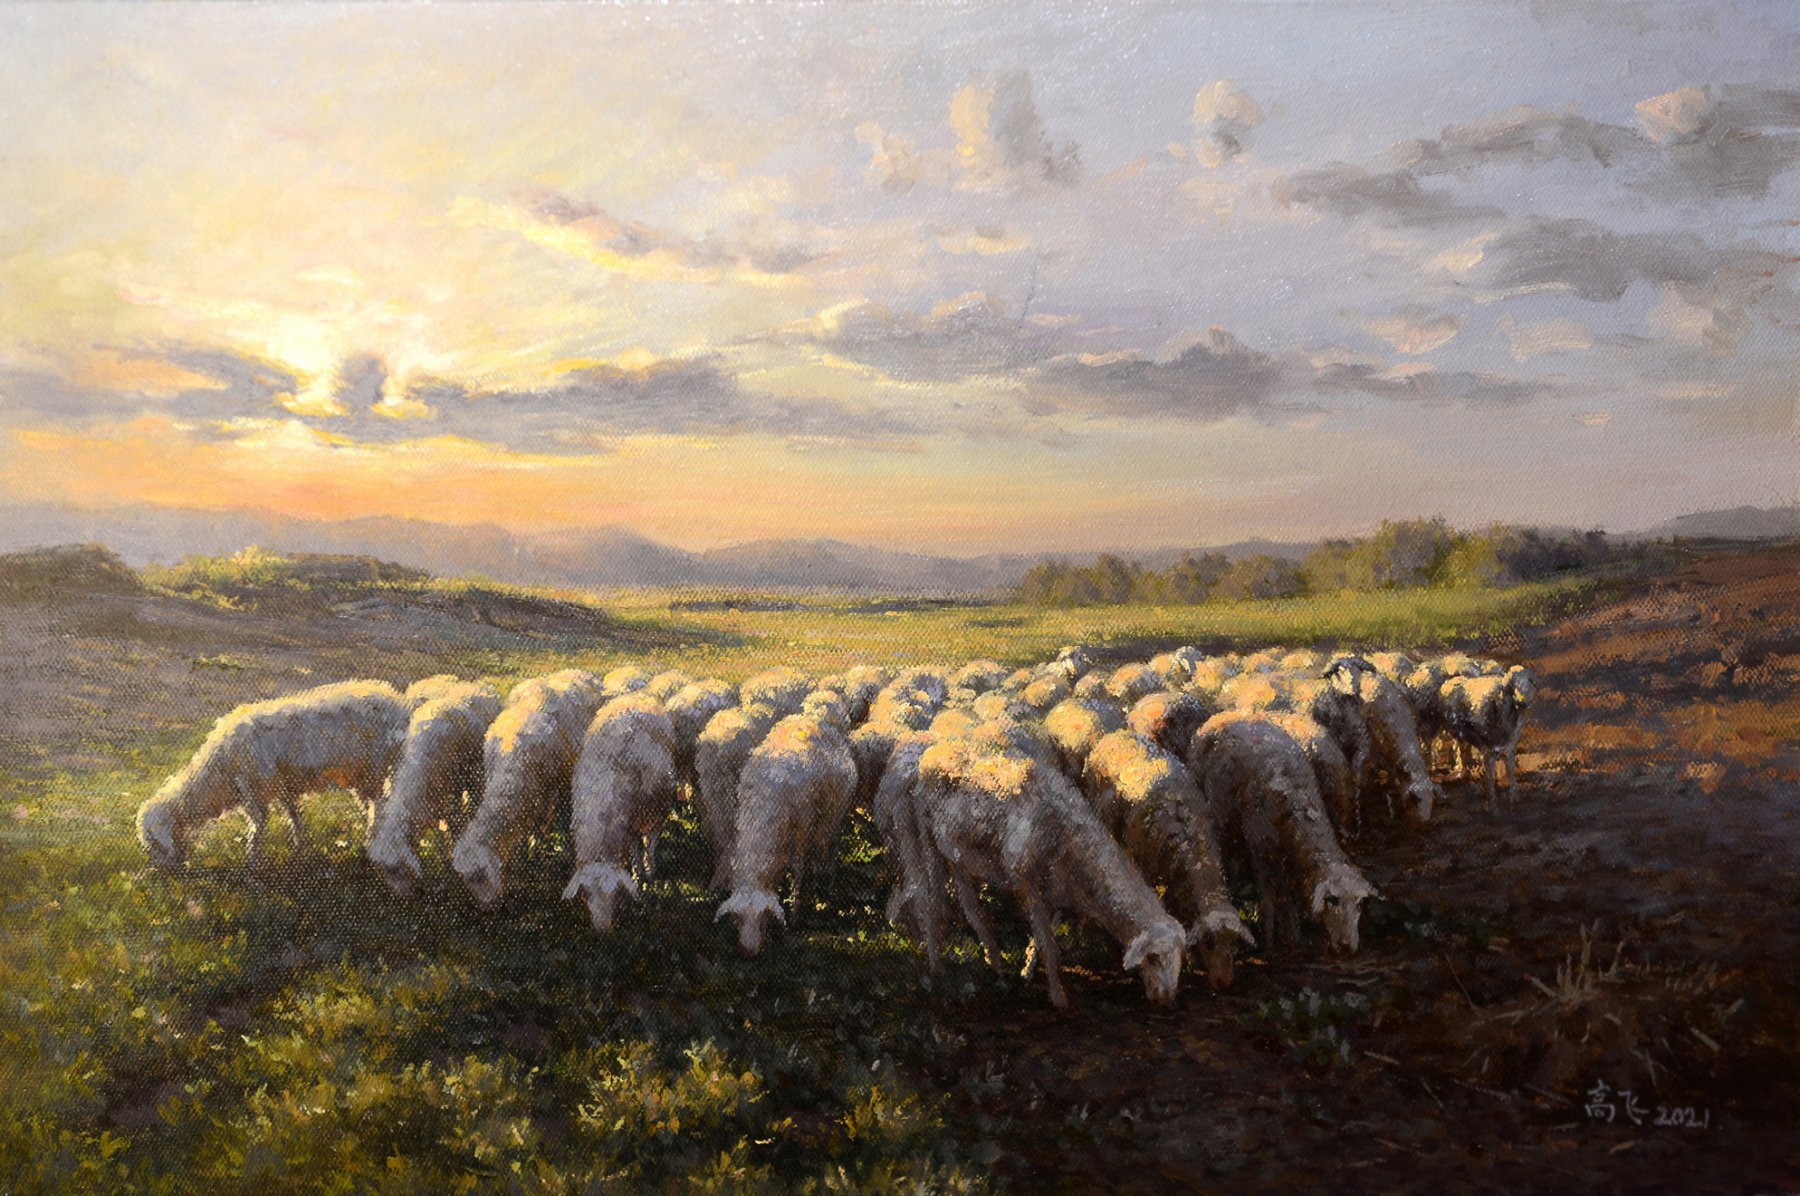 《黄昏的羊群》
Flock of Sheep at Dusk - 高飞 Fei Gao